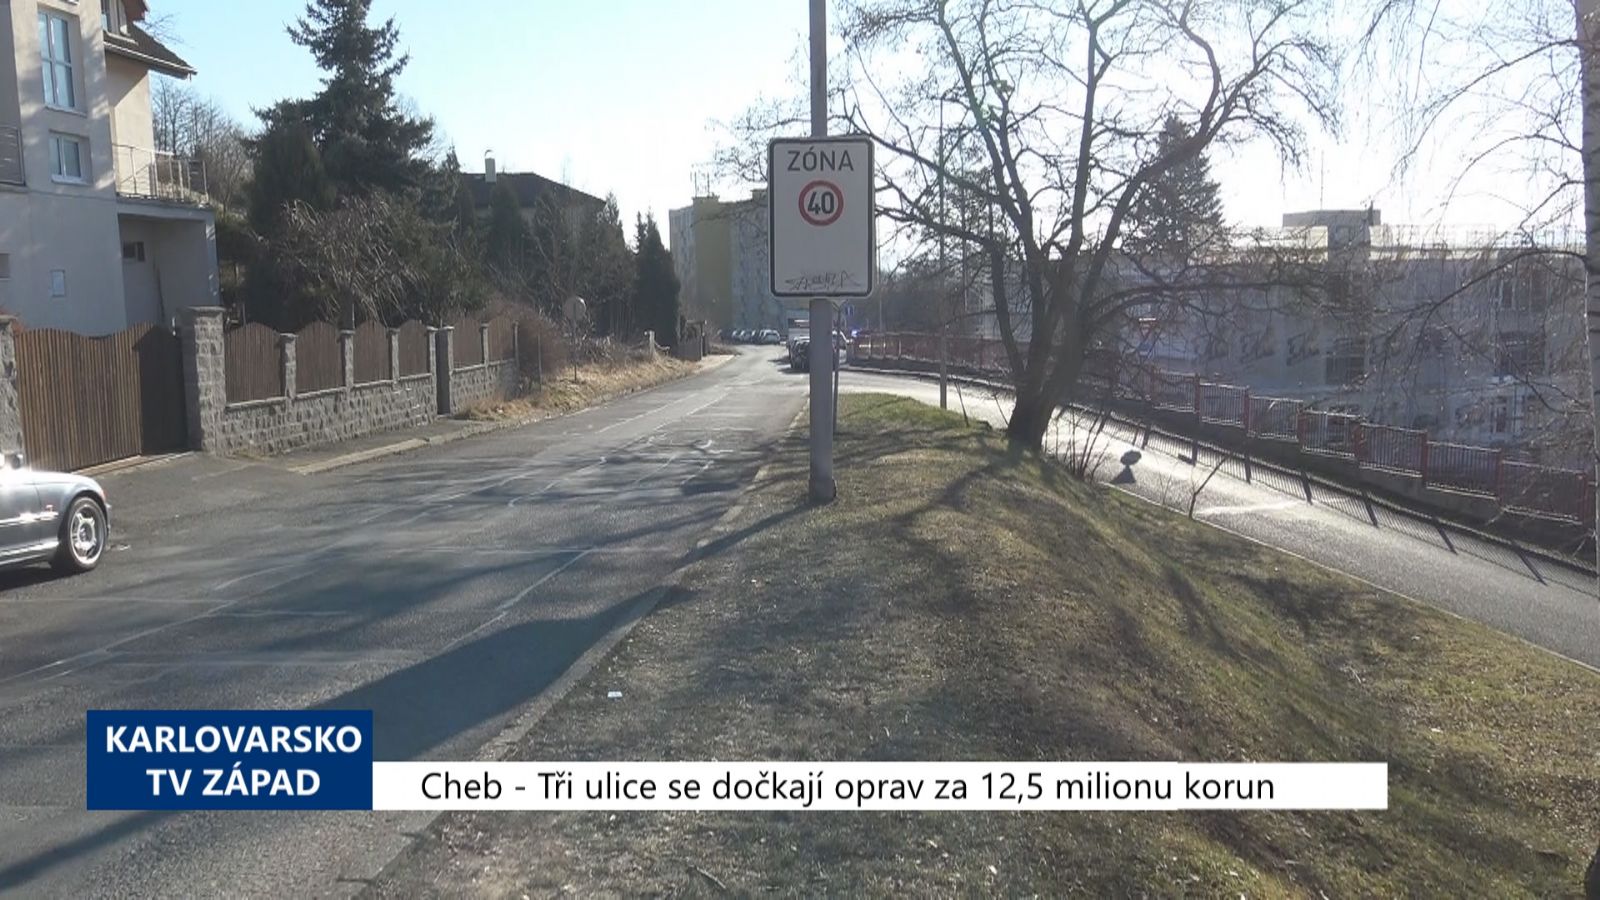 Cheb: Tři ulice se dočkají oprav za 12,5 milionu korun (TV Západ)